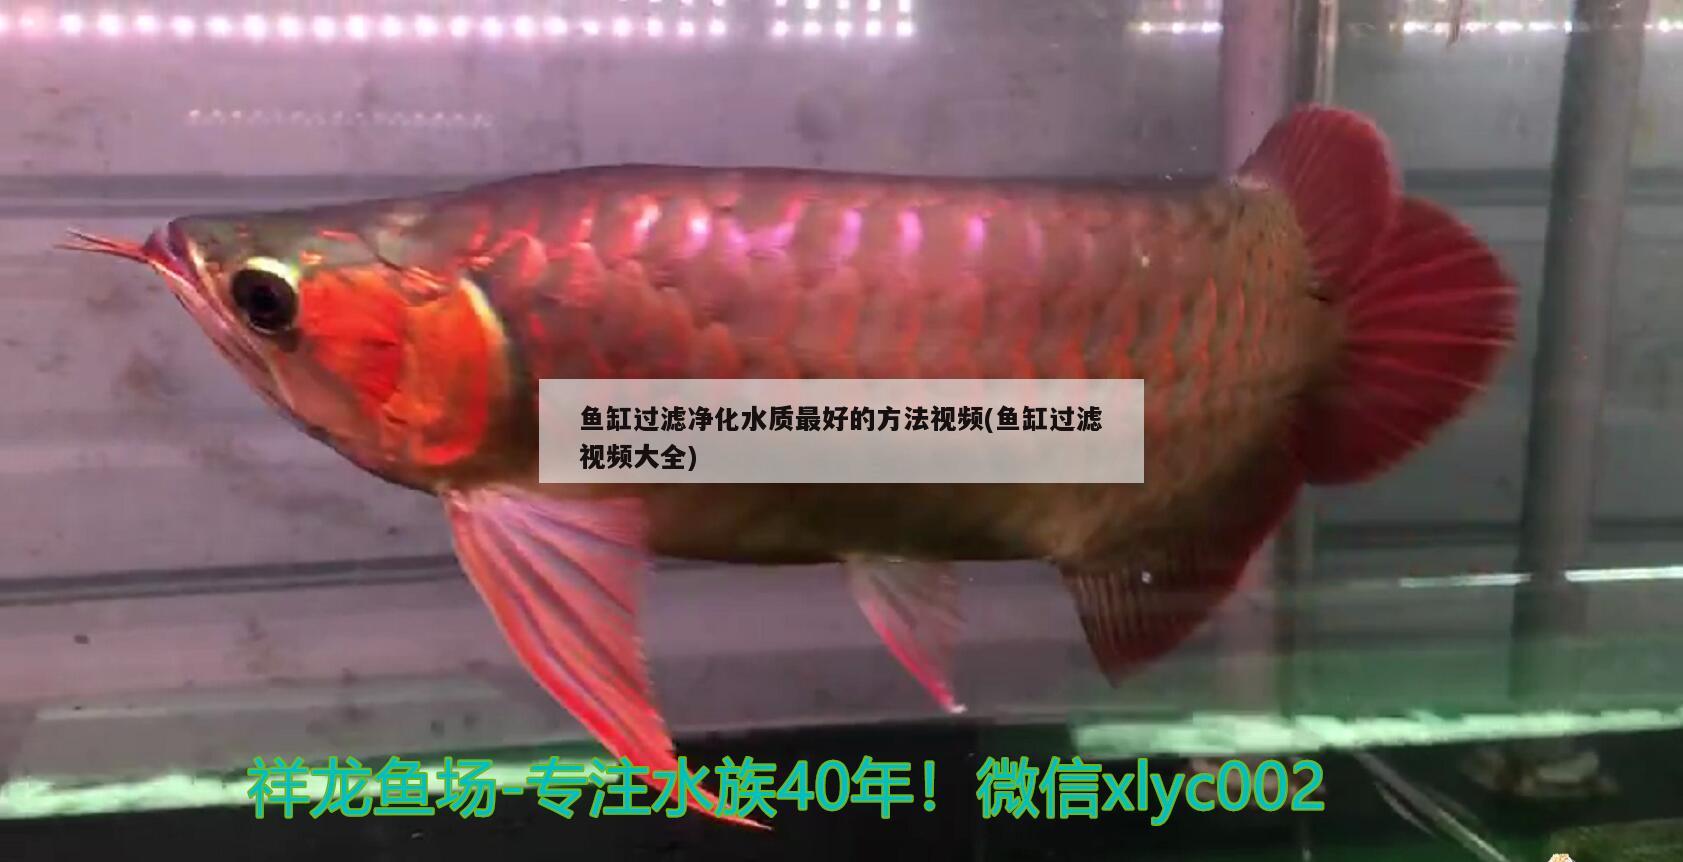 鱼缸过滤净化水质最好的方法视频(鱼缸过滤视频大全) 孵化器